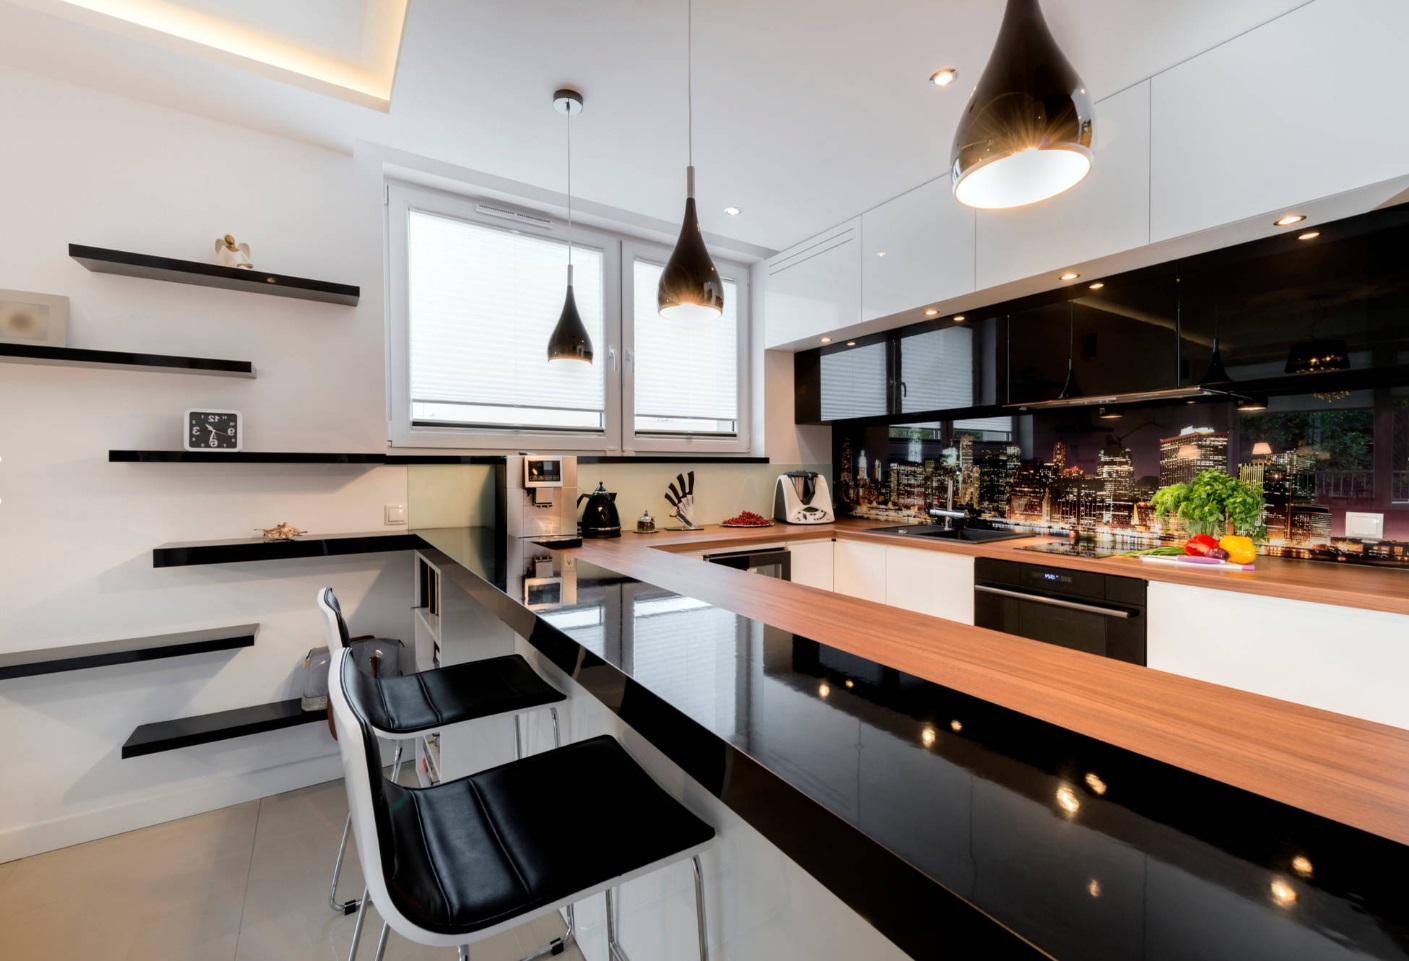 Столешница для кухни из ЛДСП в сочетании фактур черного глянца и светлой древесины.